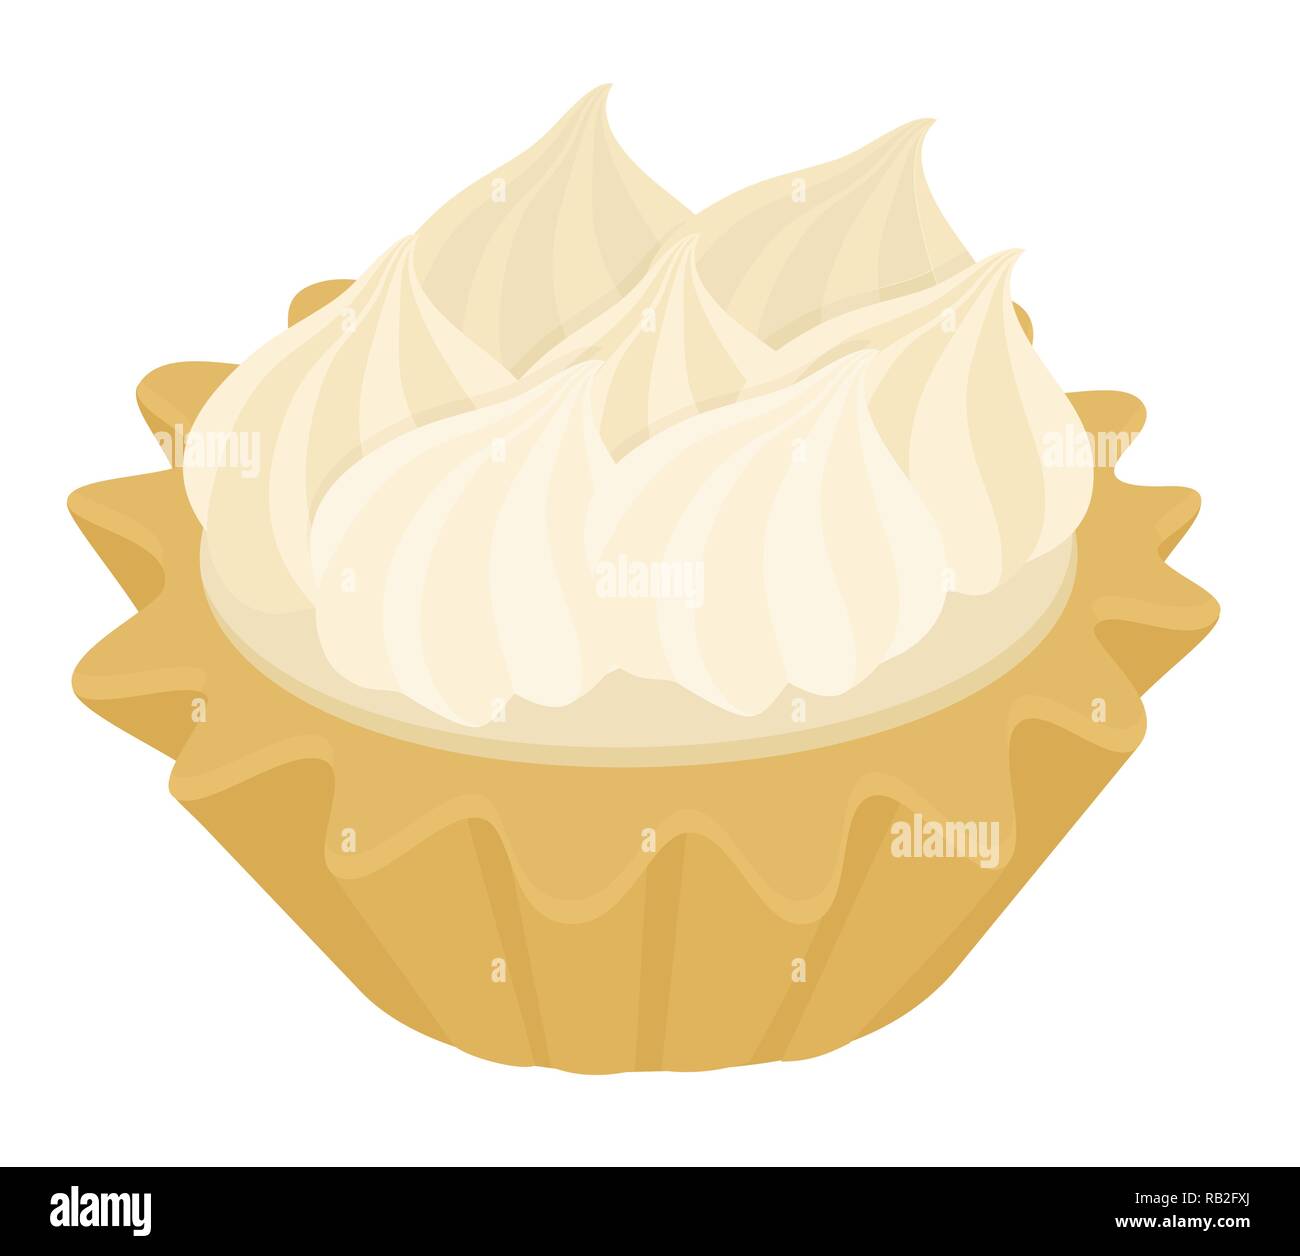 Deserto Tartlet la torta con la meringa italiana e crema di limone. Illustrazione Vettoriale su sfondo bianco Illustrazione Vettoriale